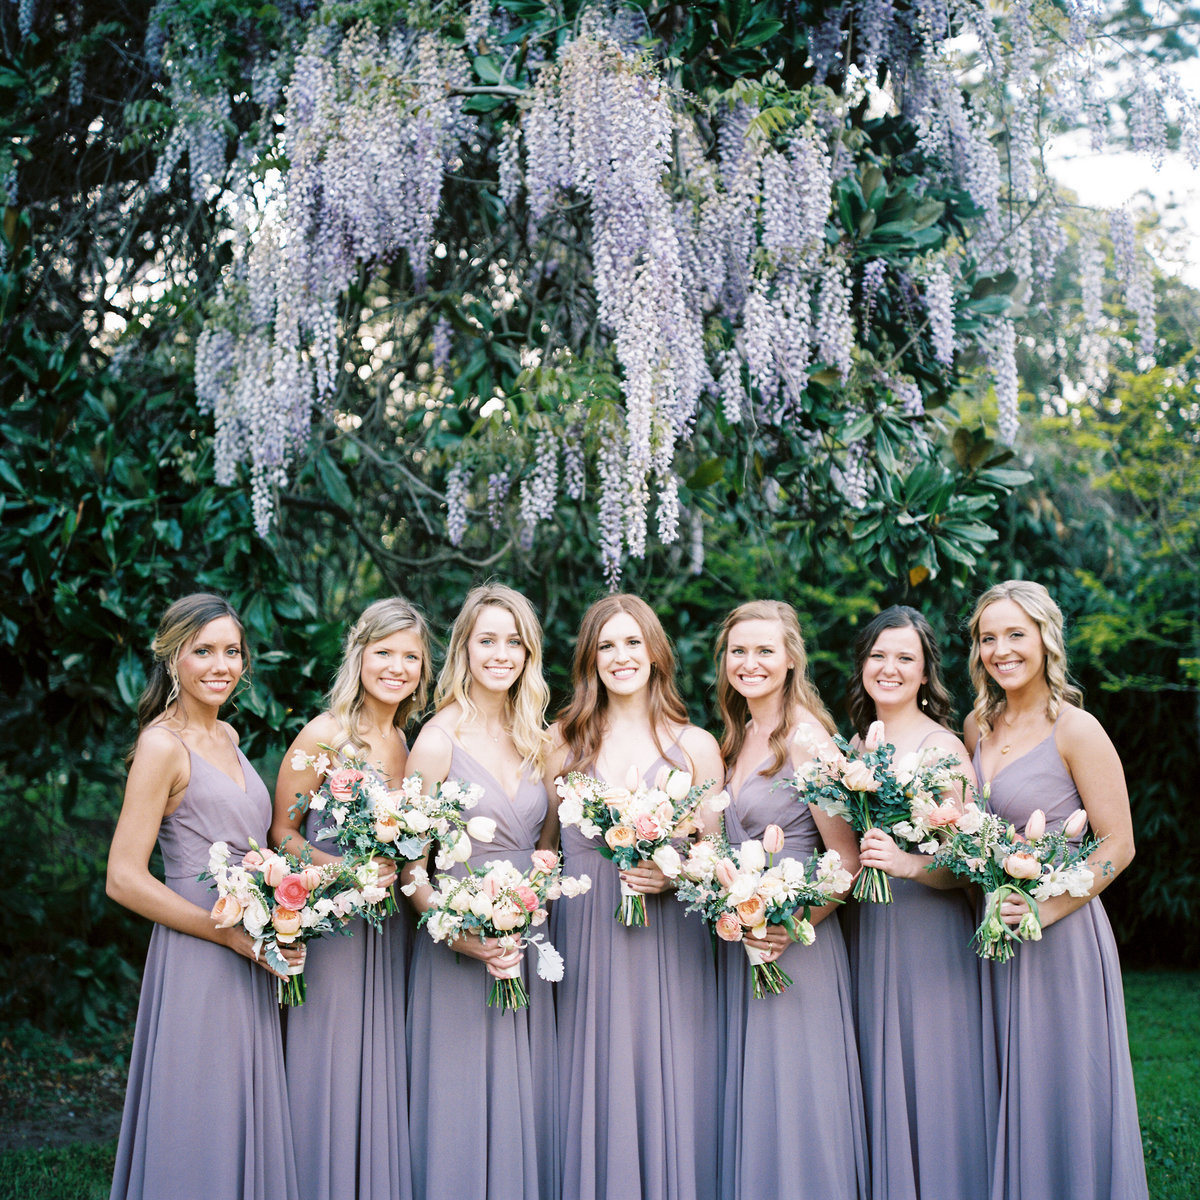 Magnolia Plantation Wedding in Spring Color Bridesmaids